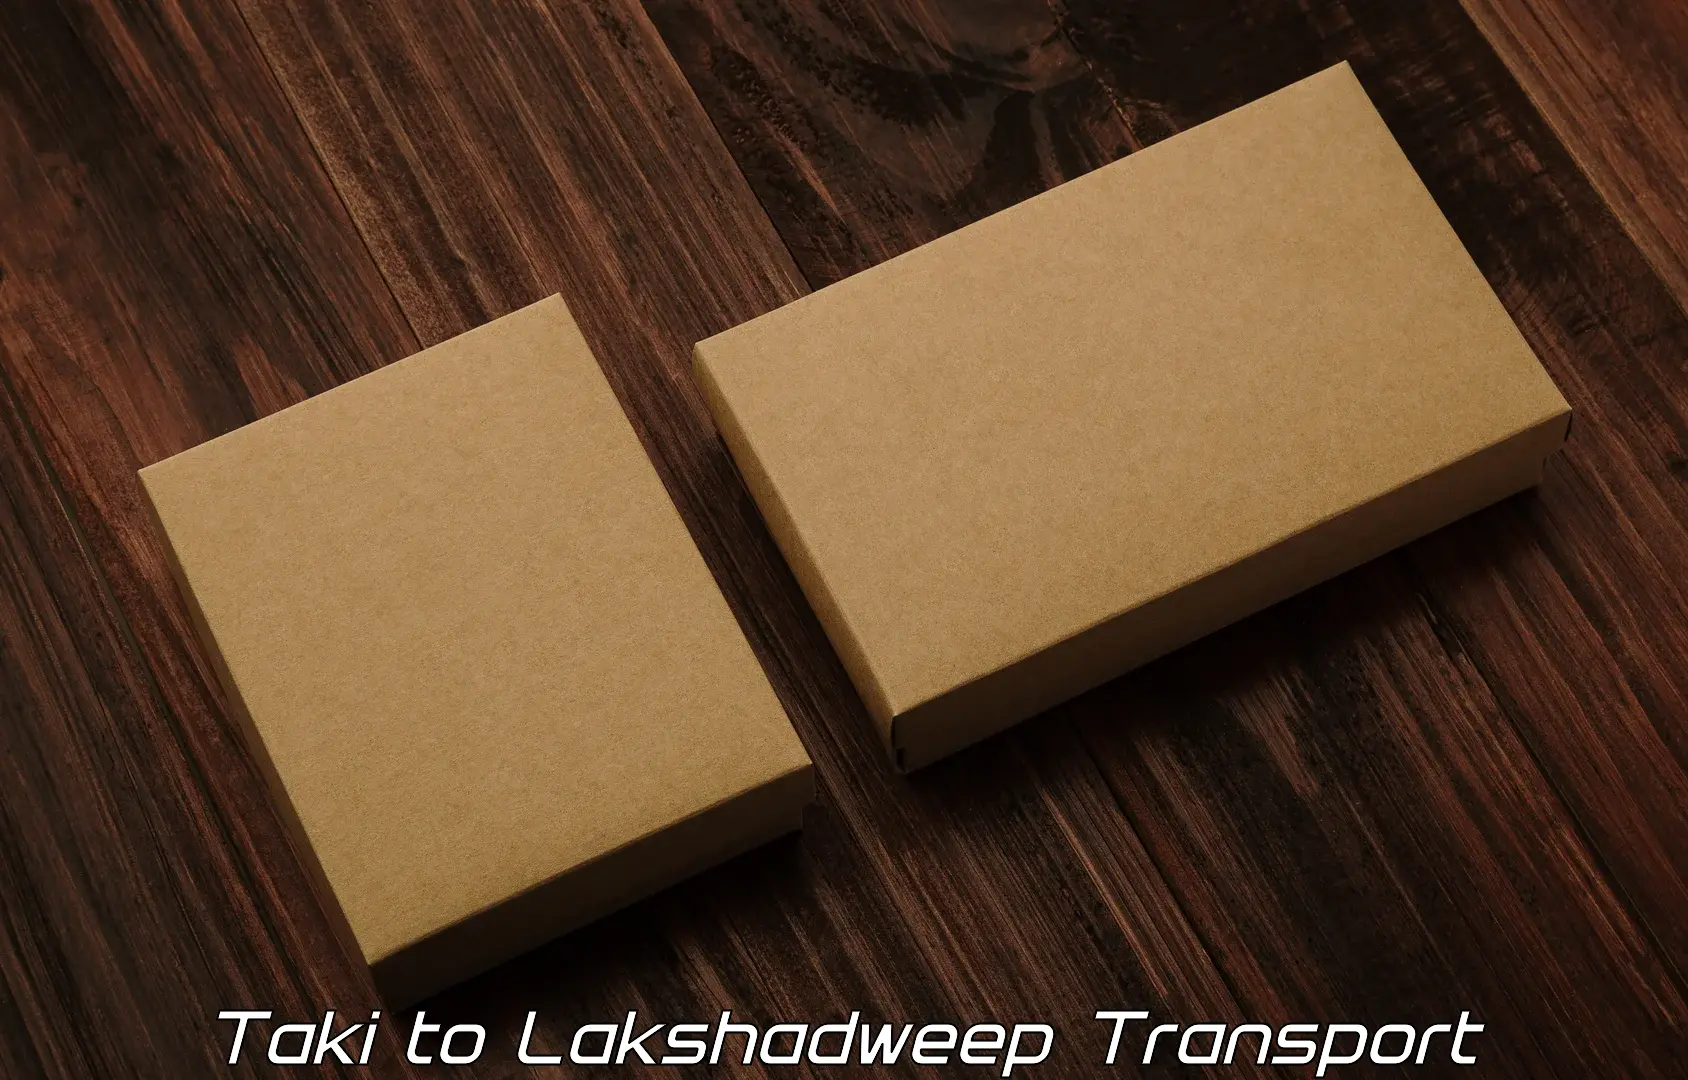 Online transport booking Taki to Lakshadweep